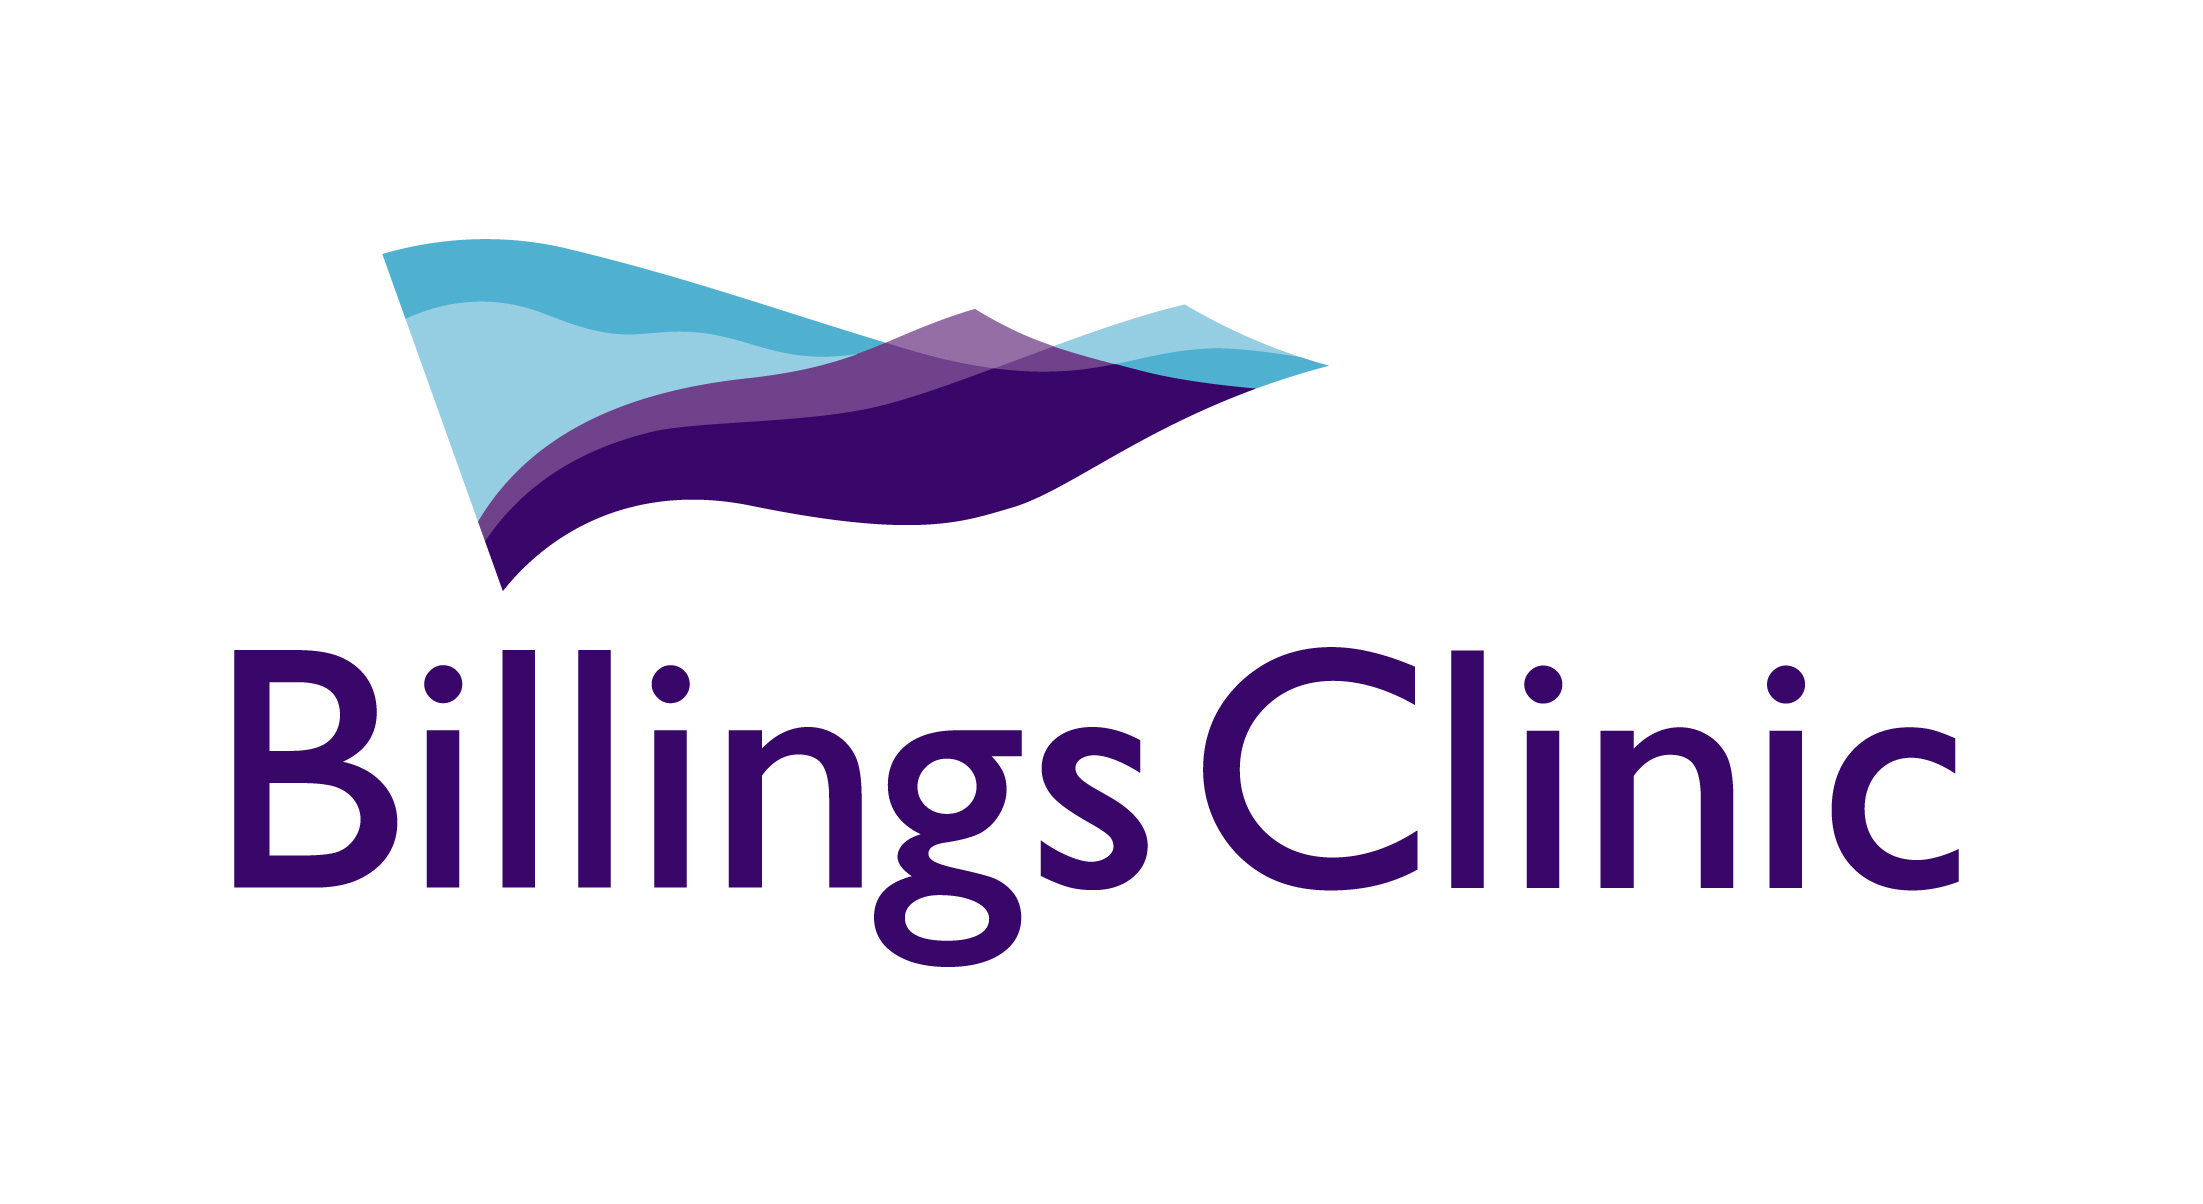 Billings clinic logo